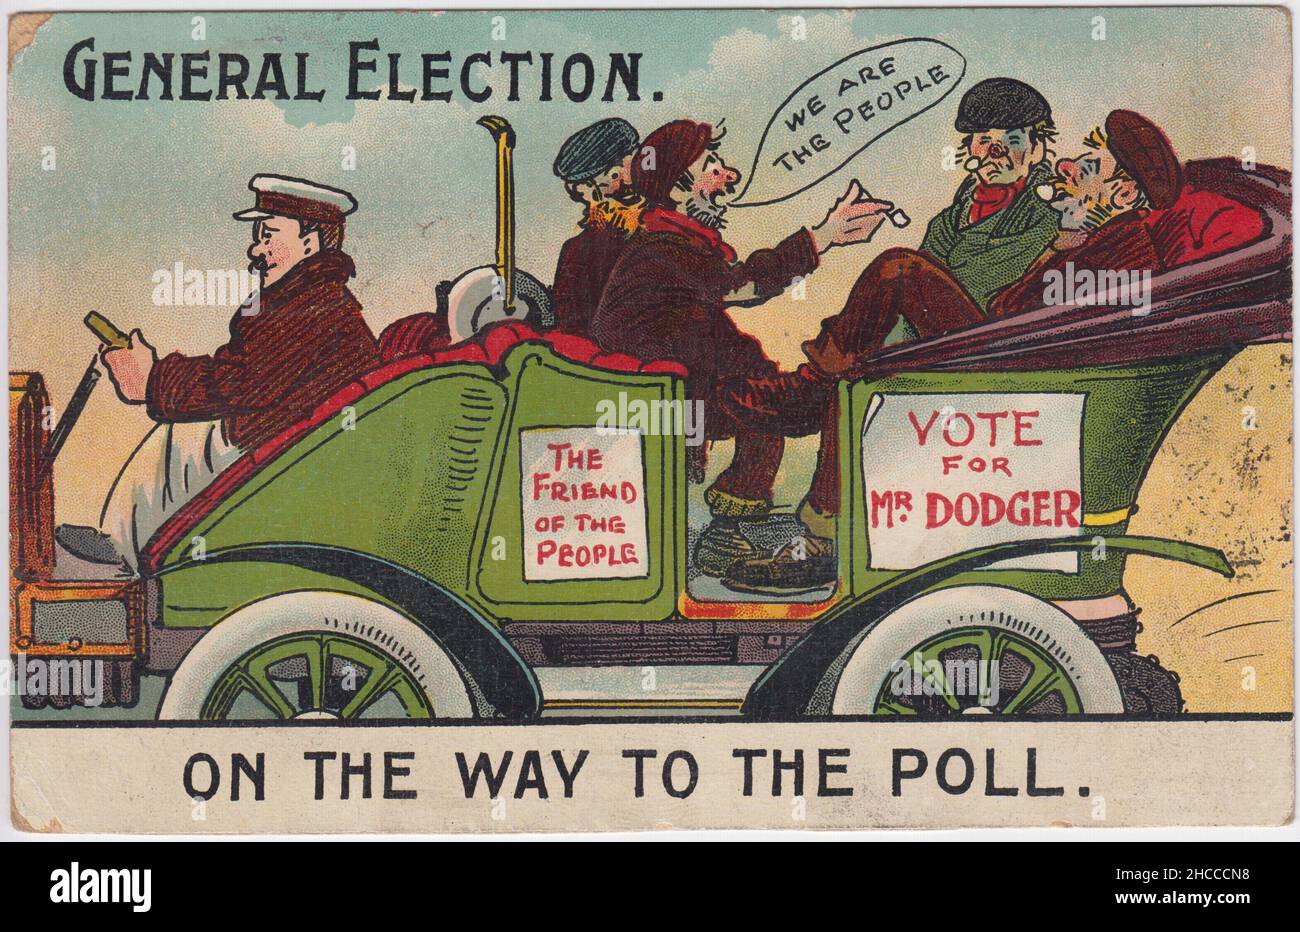 Allgemeine Wahlen. Auf dem Weg zur Umfrage.“ 1910 Karikatur zur Wahl der Parlamentswahlen, die Kandidaten der relativ neuen Labour Party angreift. Es zeigt vier skruffige, unrasierte Männer, die Tonpfeifen rauchen, die in einem Auto chauffiert werden. Das Auto ist mit Plakaten geschmückt, auf denen steht: „Der Freund des Volkes“ und „Vote for Mr Dodger“, und einer der Männer sagt: „Wir sind das Volk“. Das Bild war eines einer Reihe politischer Cartoons, die als Postkarten veröffentlicht wurden Stockfoto